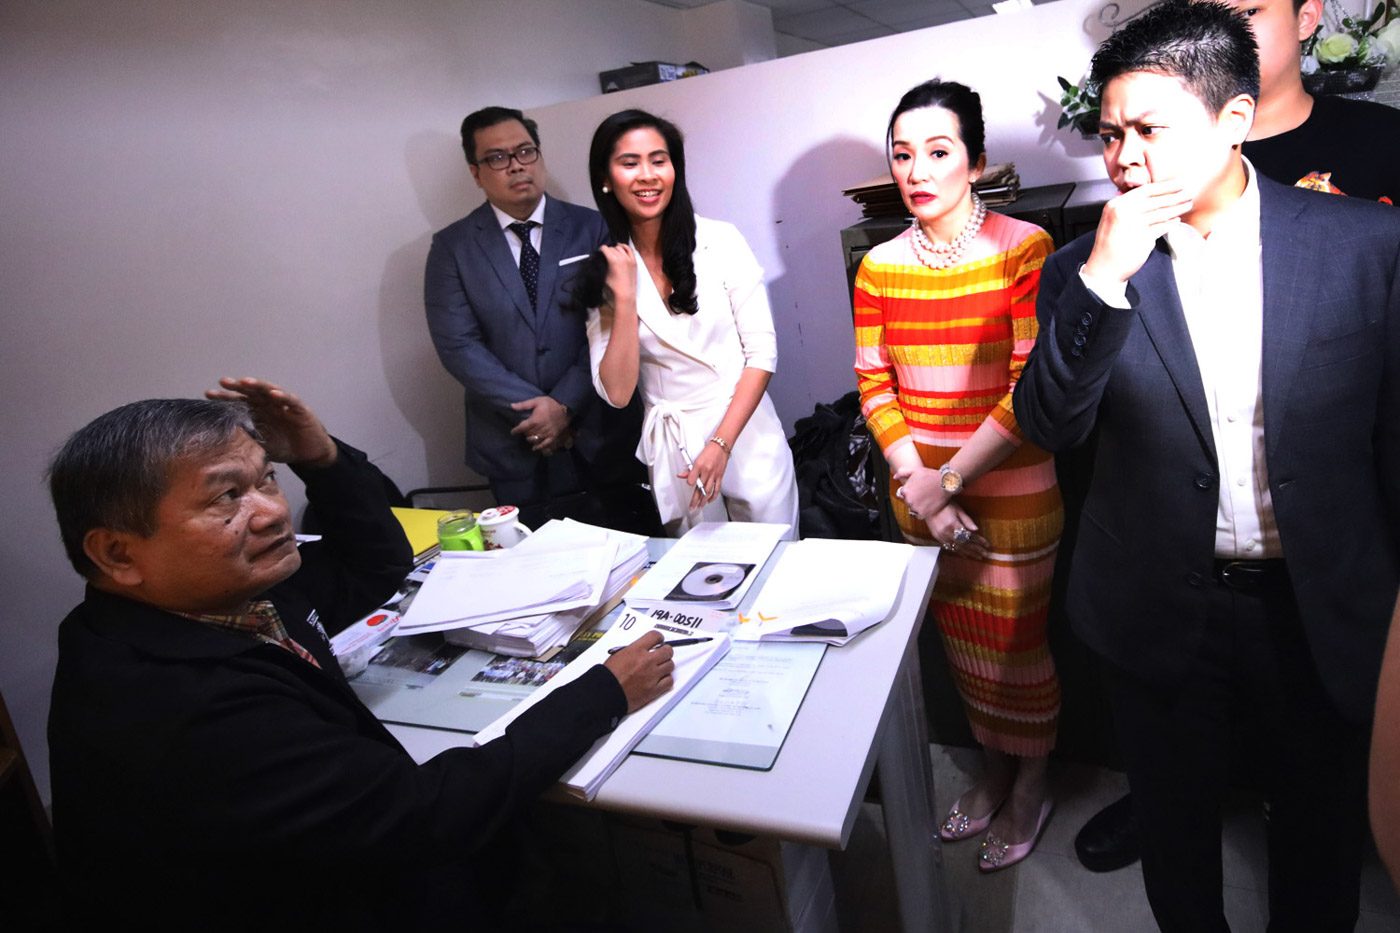 Quezon City prosecutor junks Falcis’ grave threats case vs Kris Aquino